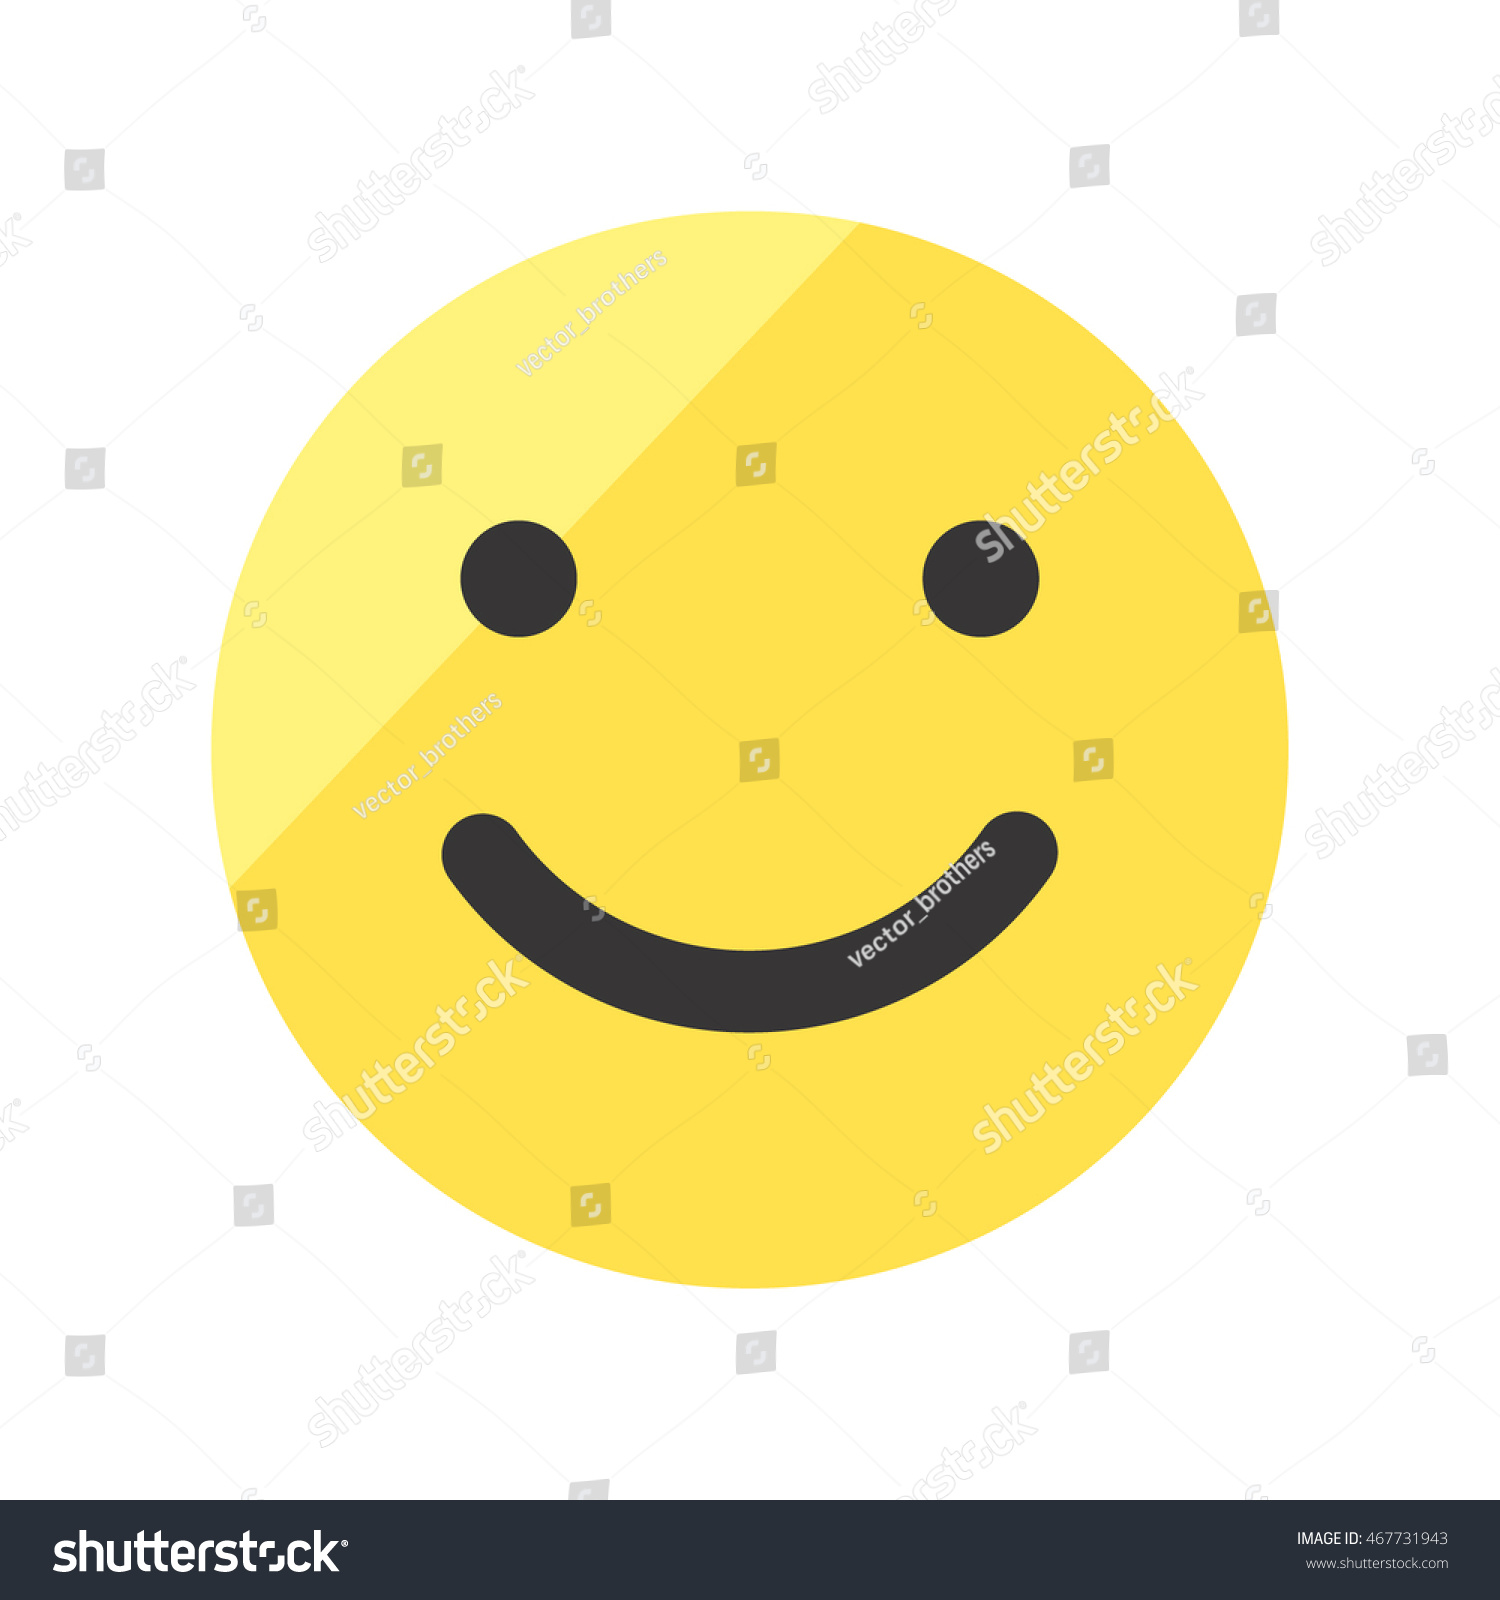 Coloured Smile Face Vector Icon. Emoji Smile. - 467731943 : Shutterstock